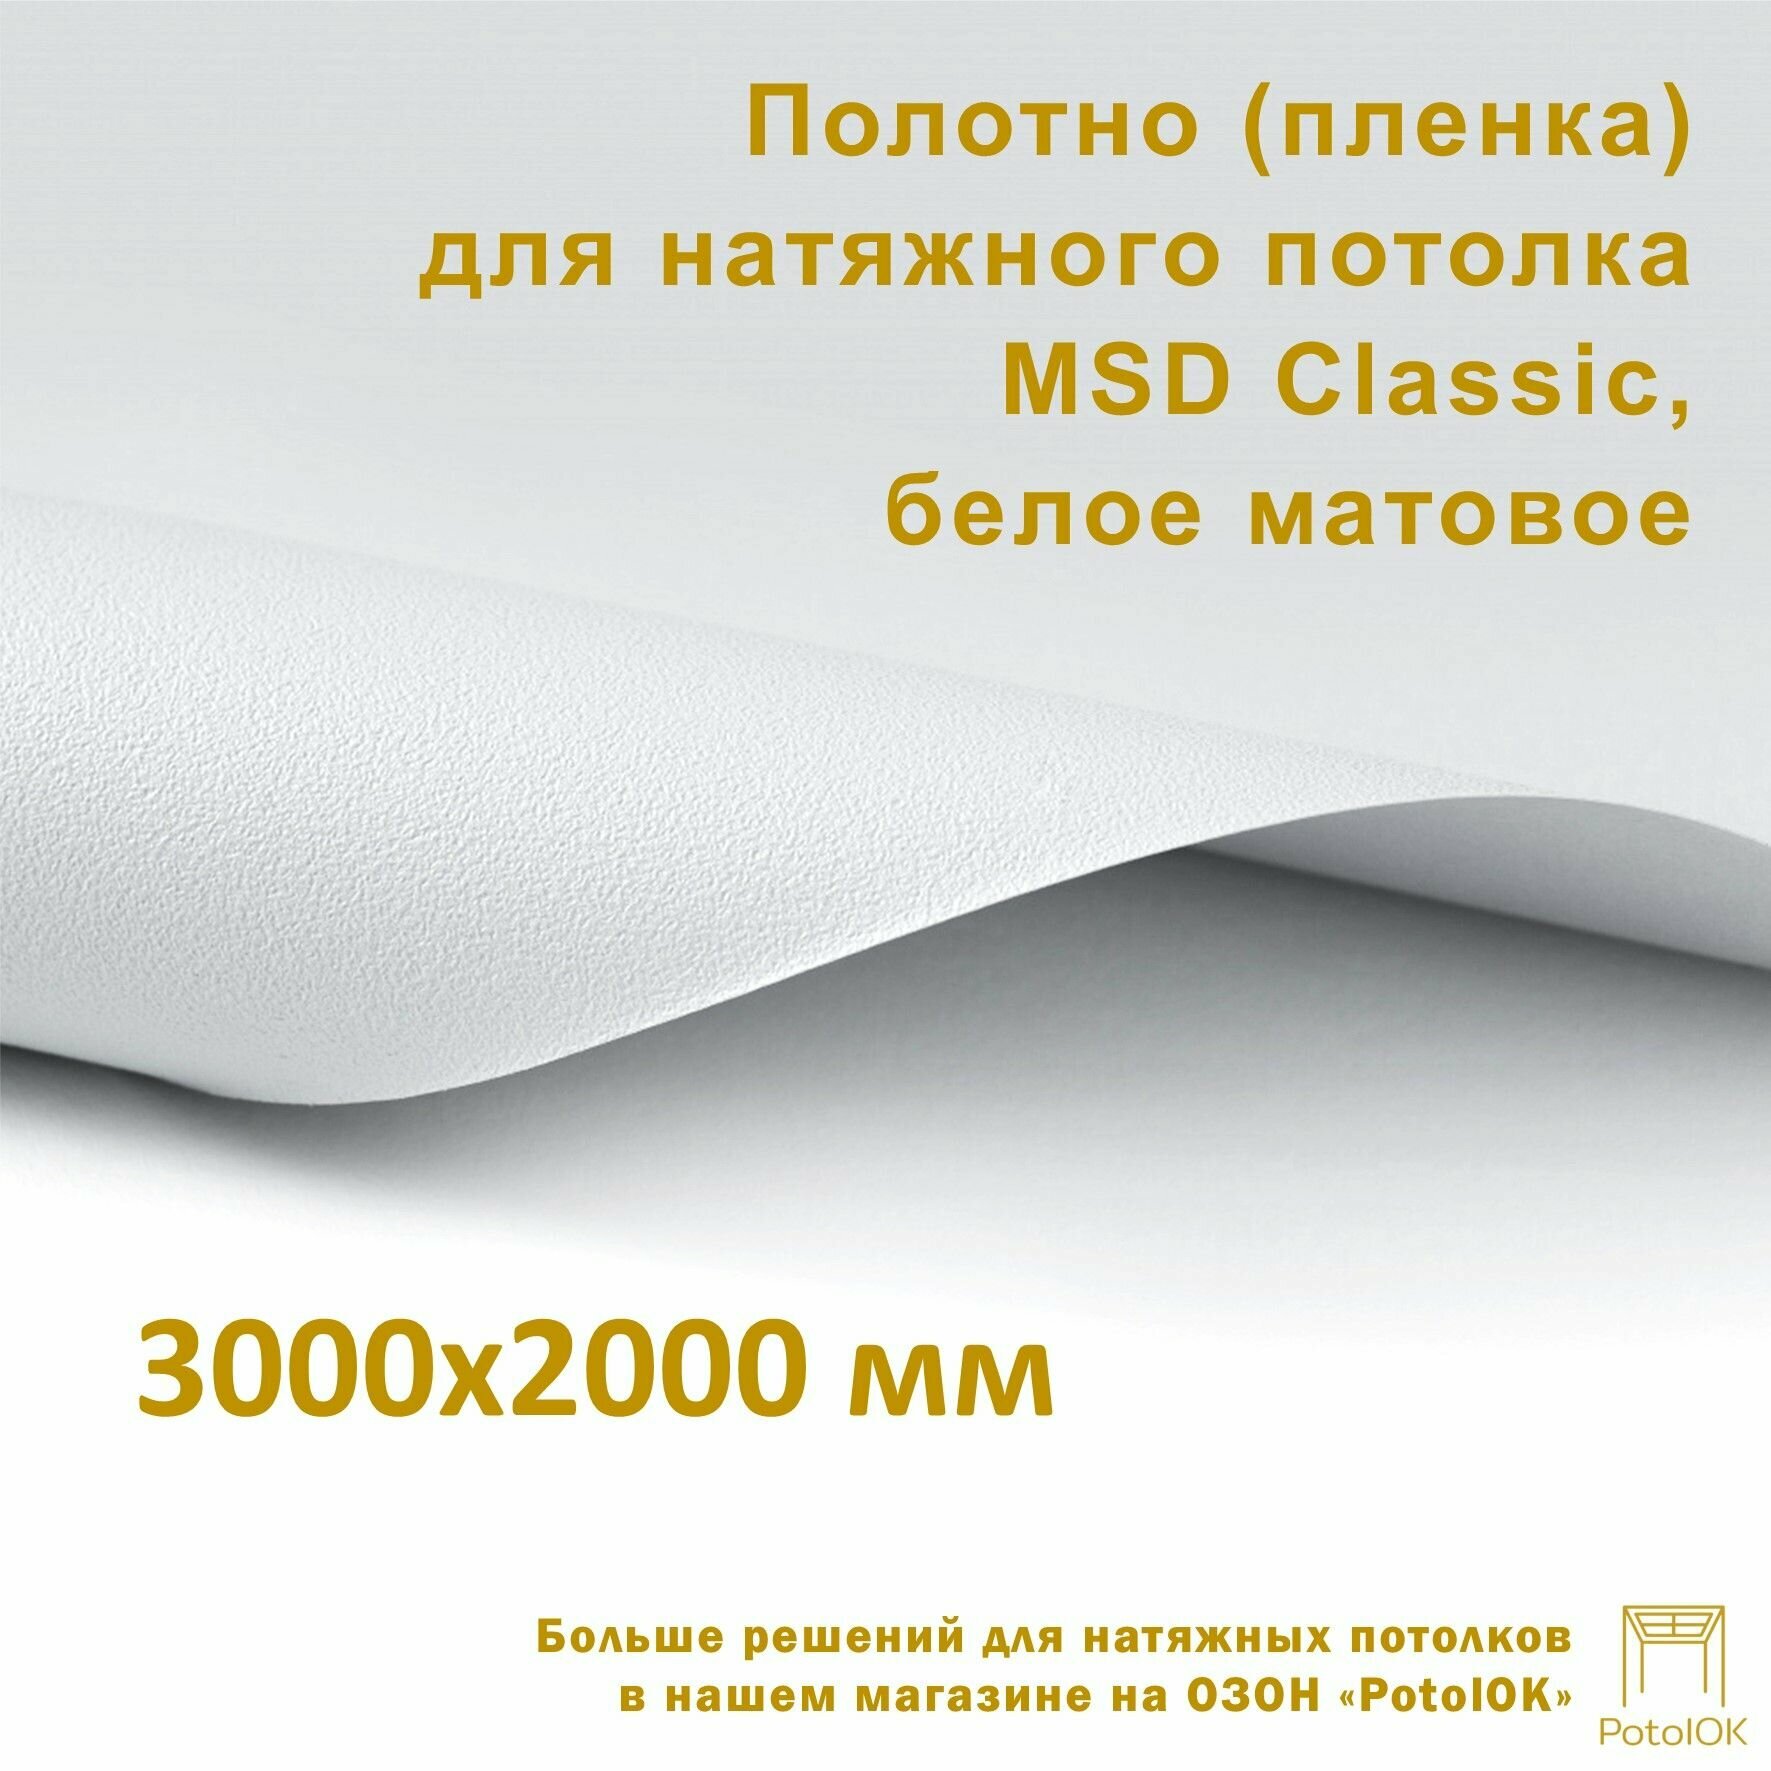 Полотно (пленка) для натяжного потолка MSD CLASSIC, белое матовое, 3000x2000 мм